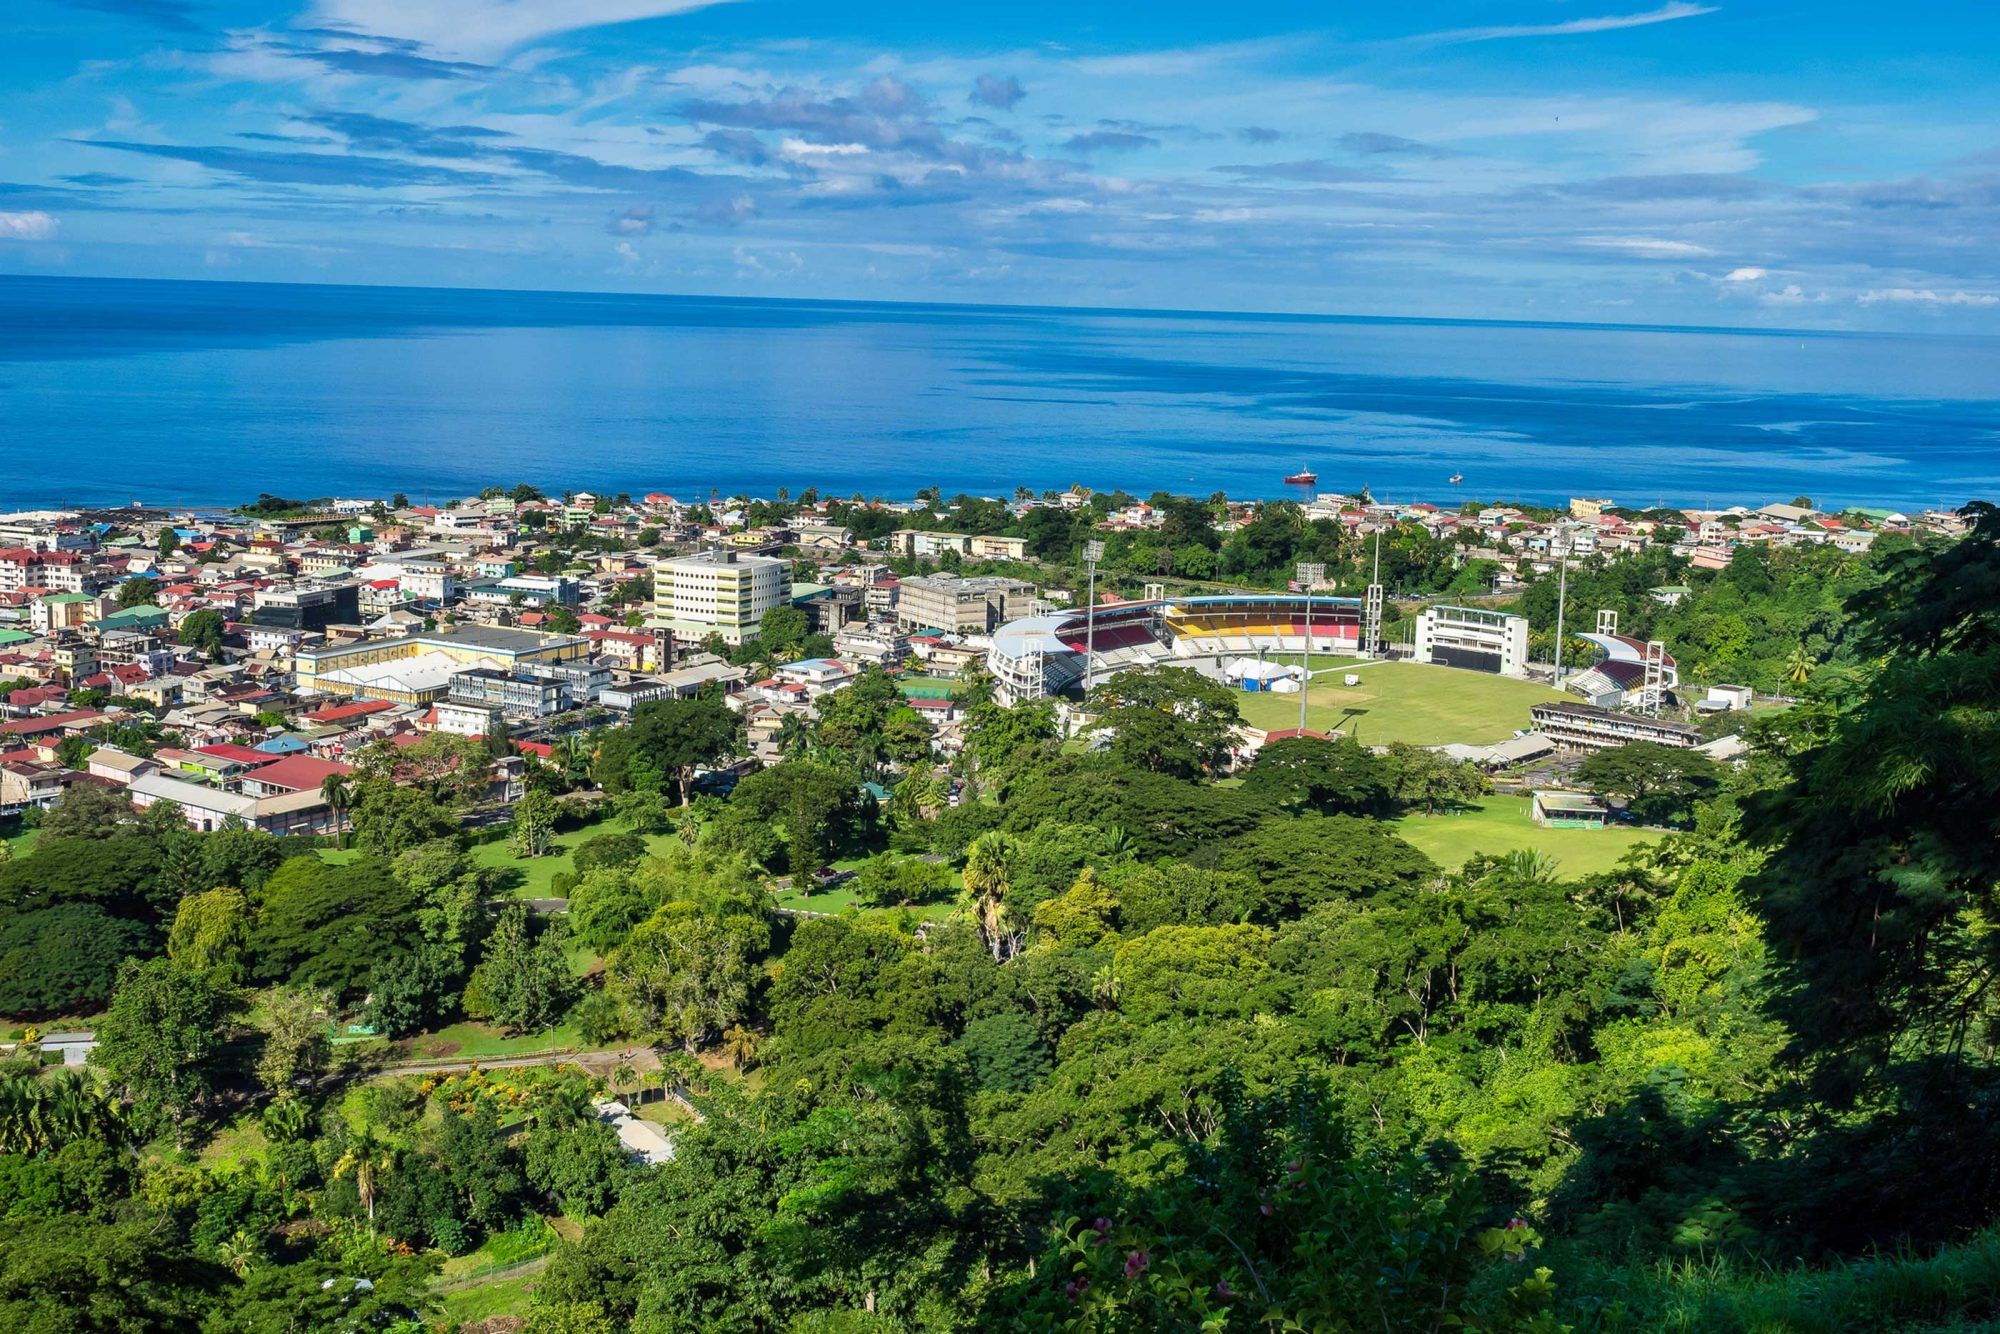 Vista panoramica della città e del mare di Roseau, isola di Dominica. Vistu da a piccula muntagna Morne Bruce